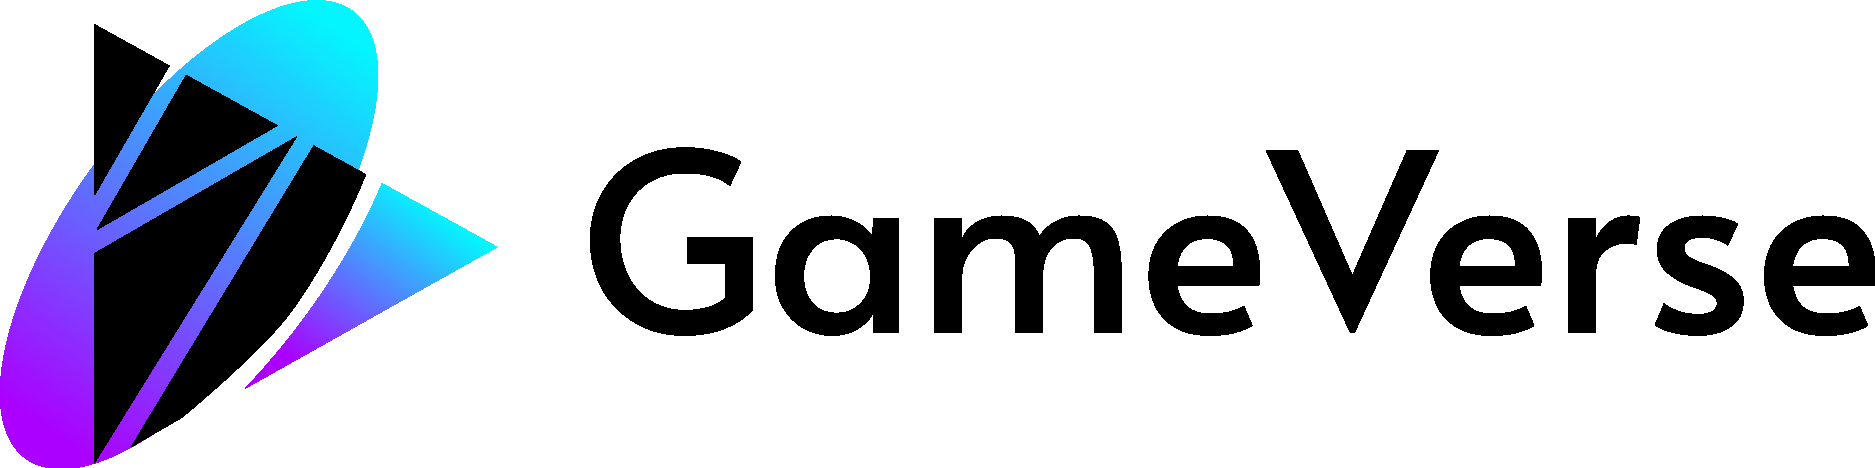 Gameverse Logo Vector